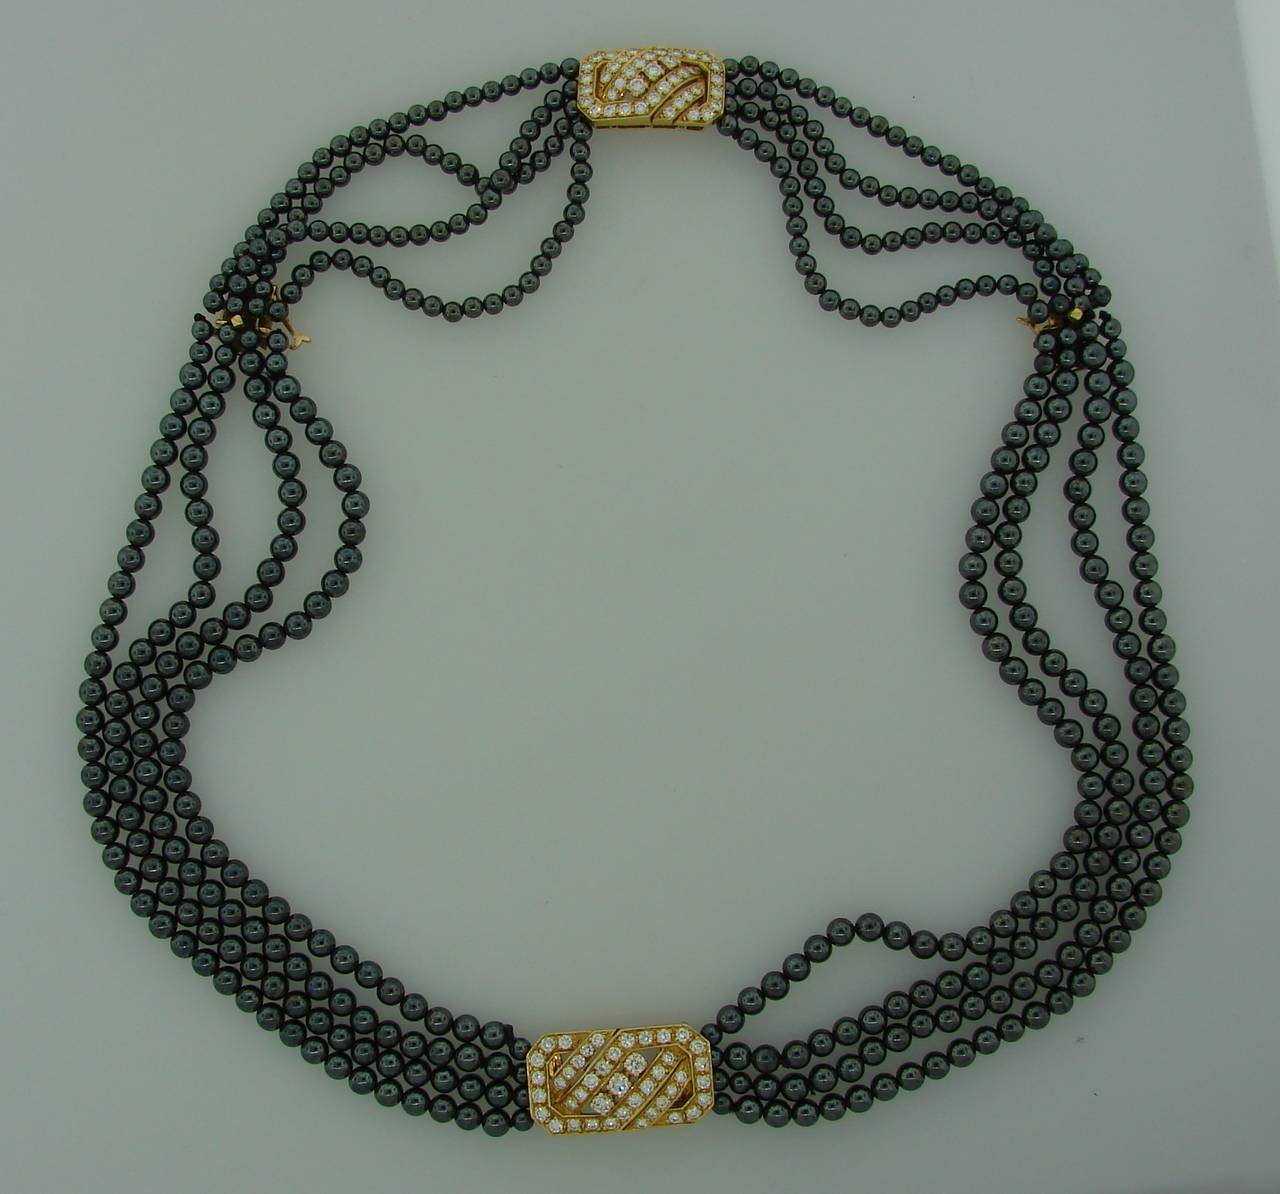 van cleef bracelet and necklace set